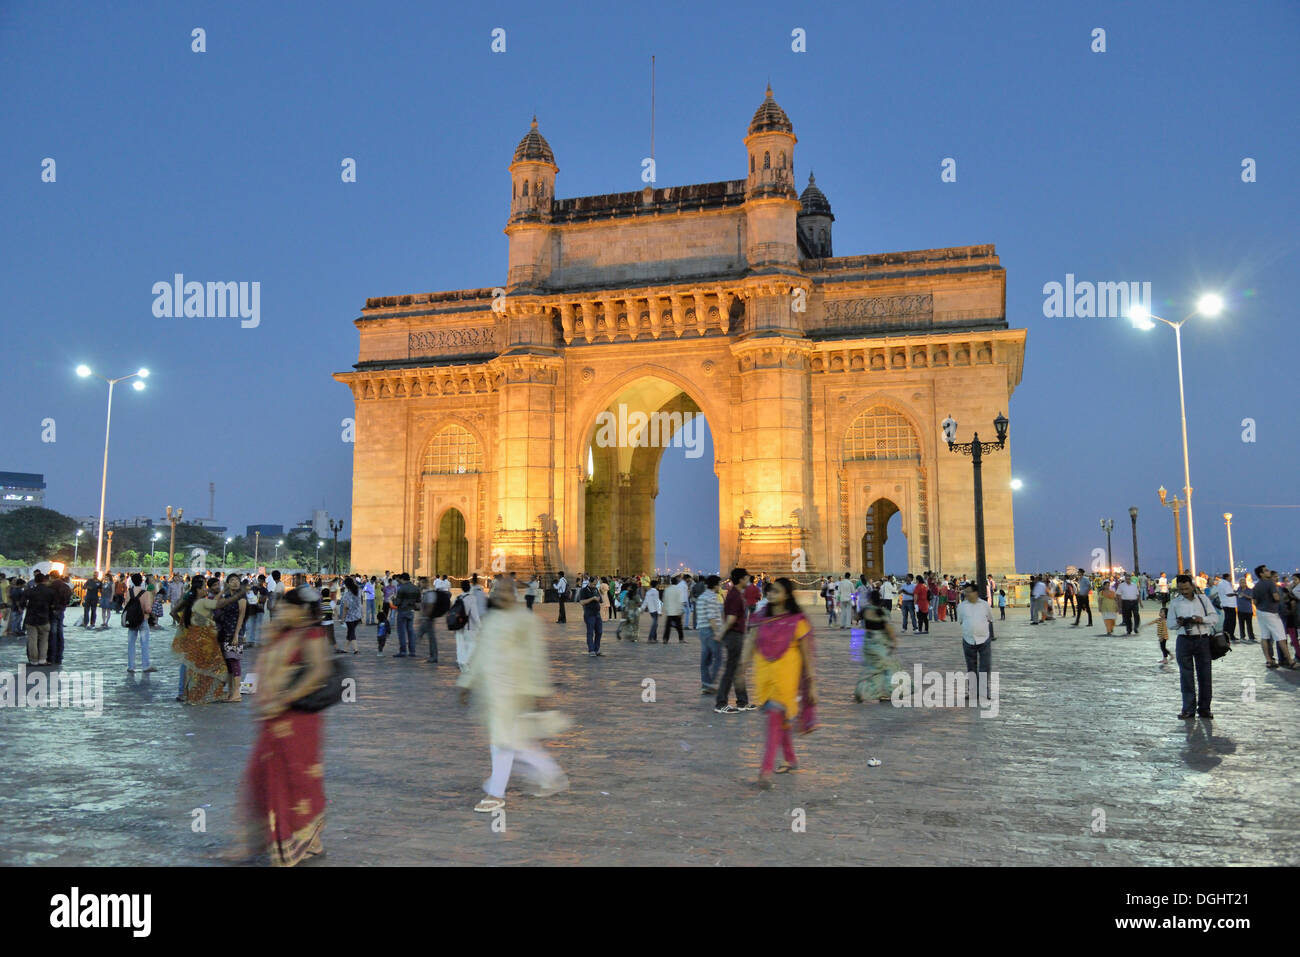 Gateway of India monument, landmark of Mumbai, Mumbai, Maharashtra, India Stock Photo